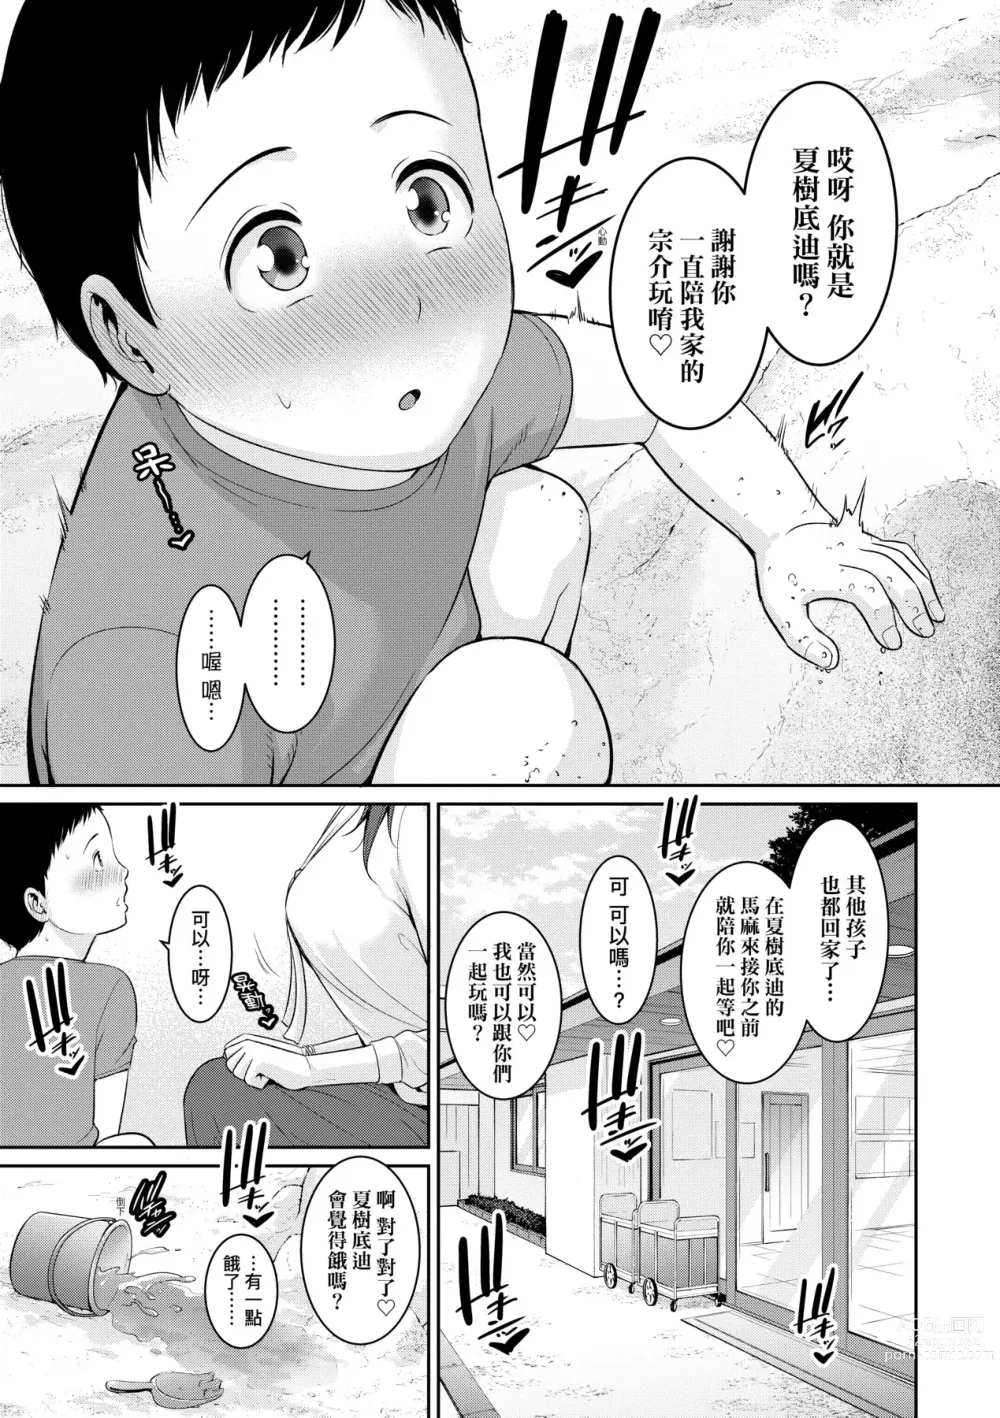 Page 194 of manga 性奮悸動 朋友的馬麻 (decensored)